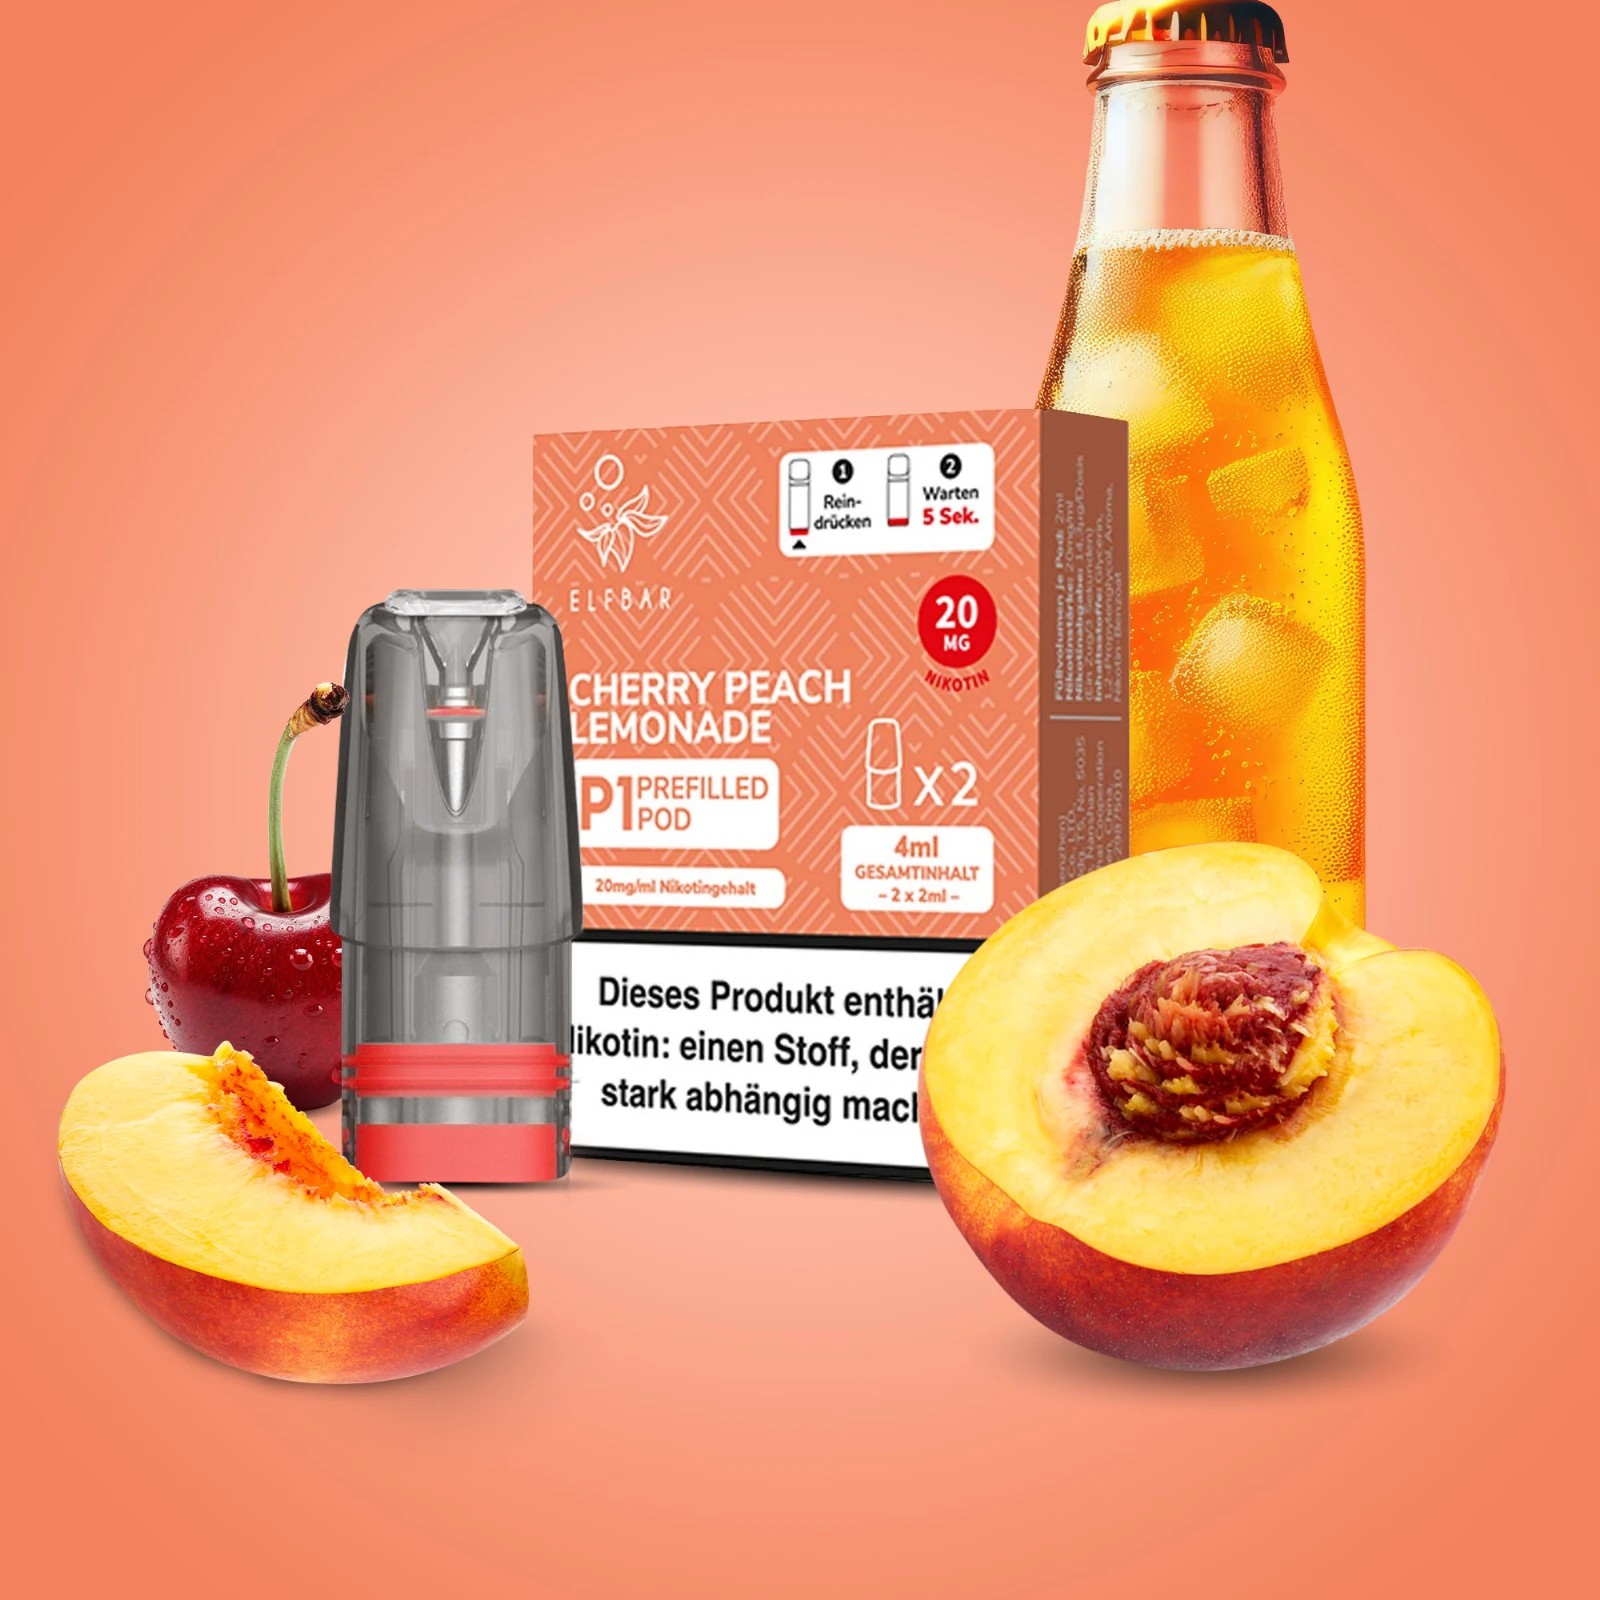 Elf Bar Mate 500 P1 Cherry Peach Lemonade Pod | Online bestellen 1